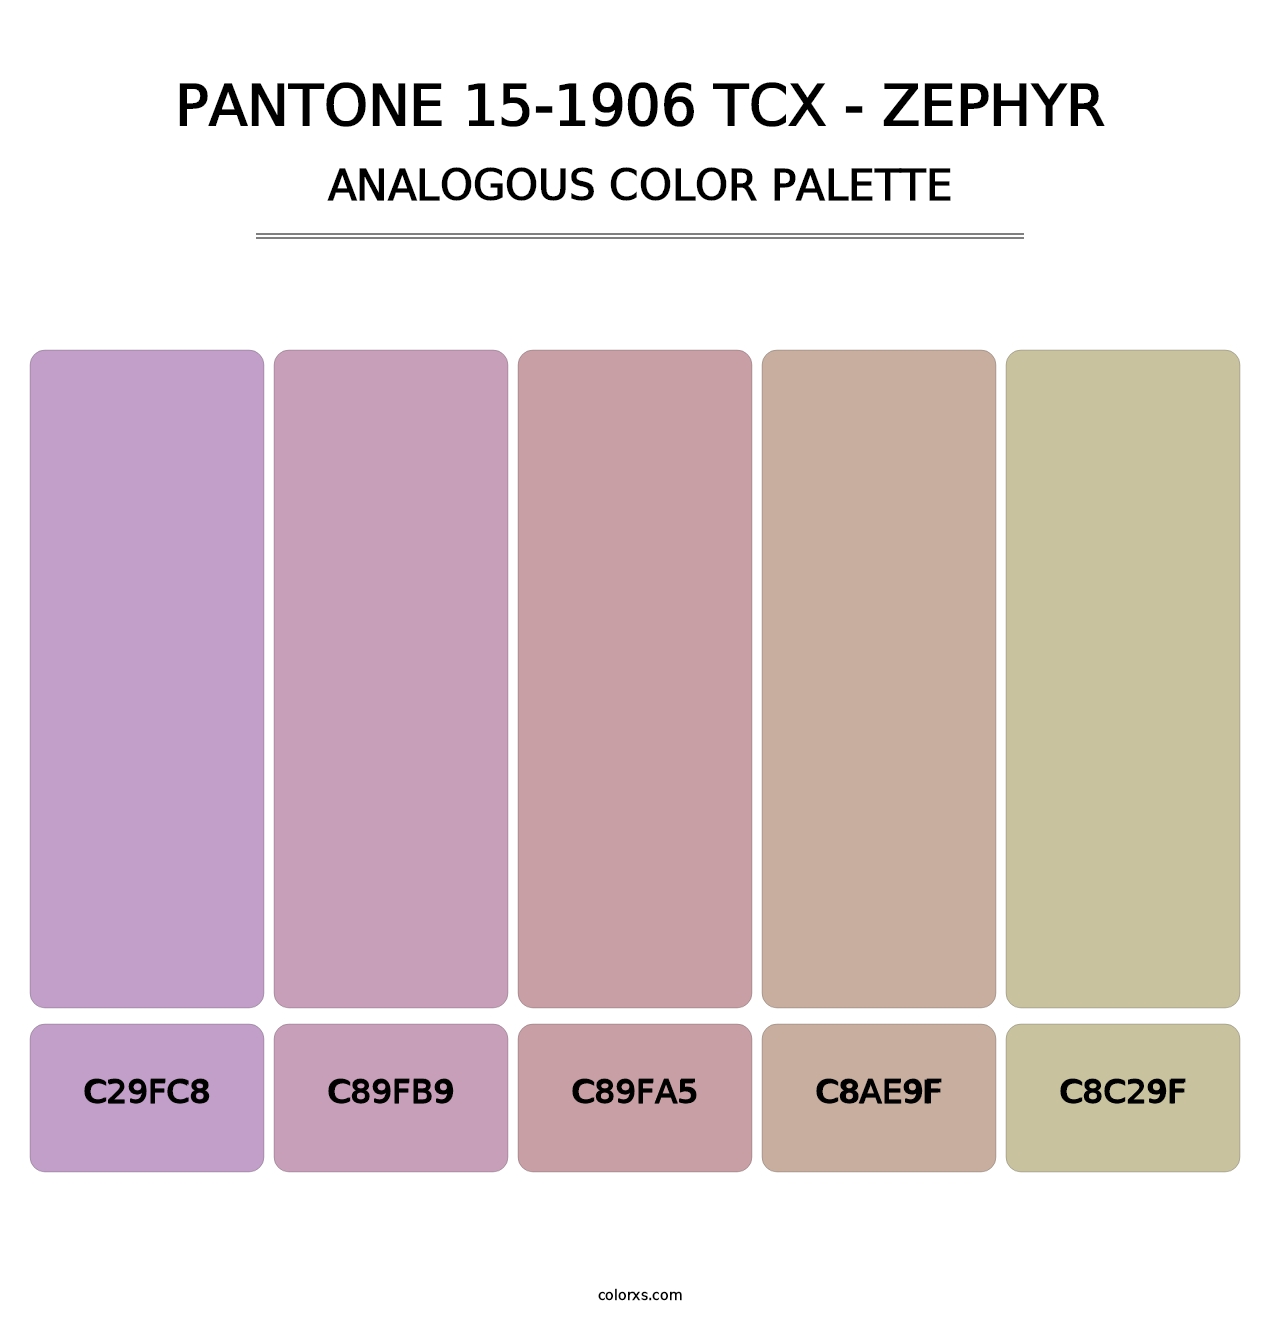 PANTONE 15-1906 TCX - Zephyr - Analogous Color Palette